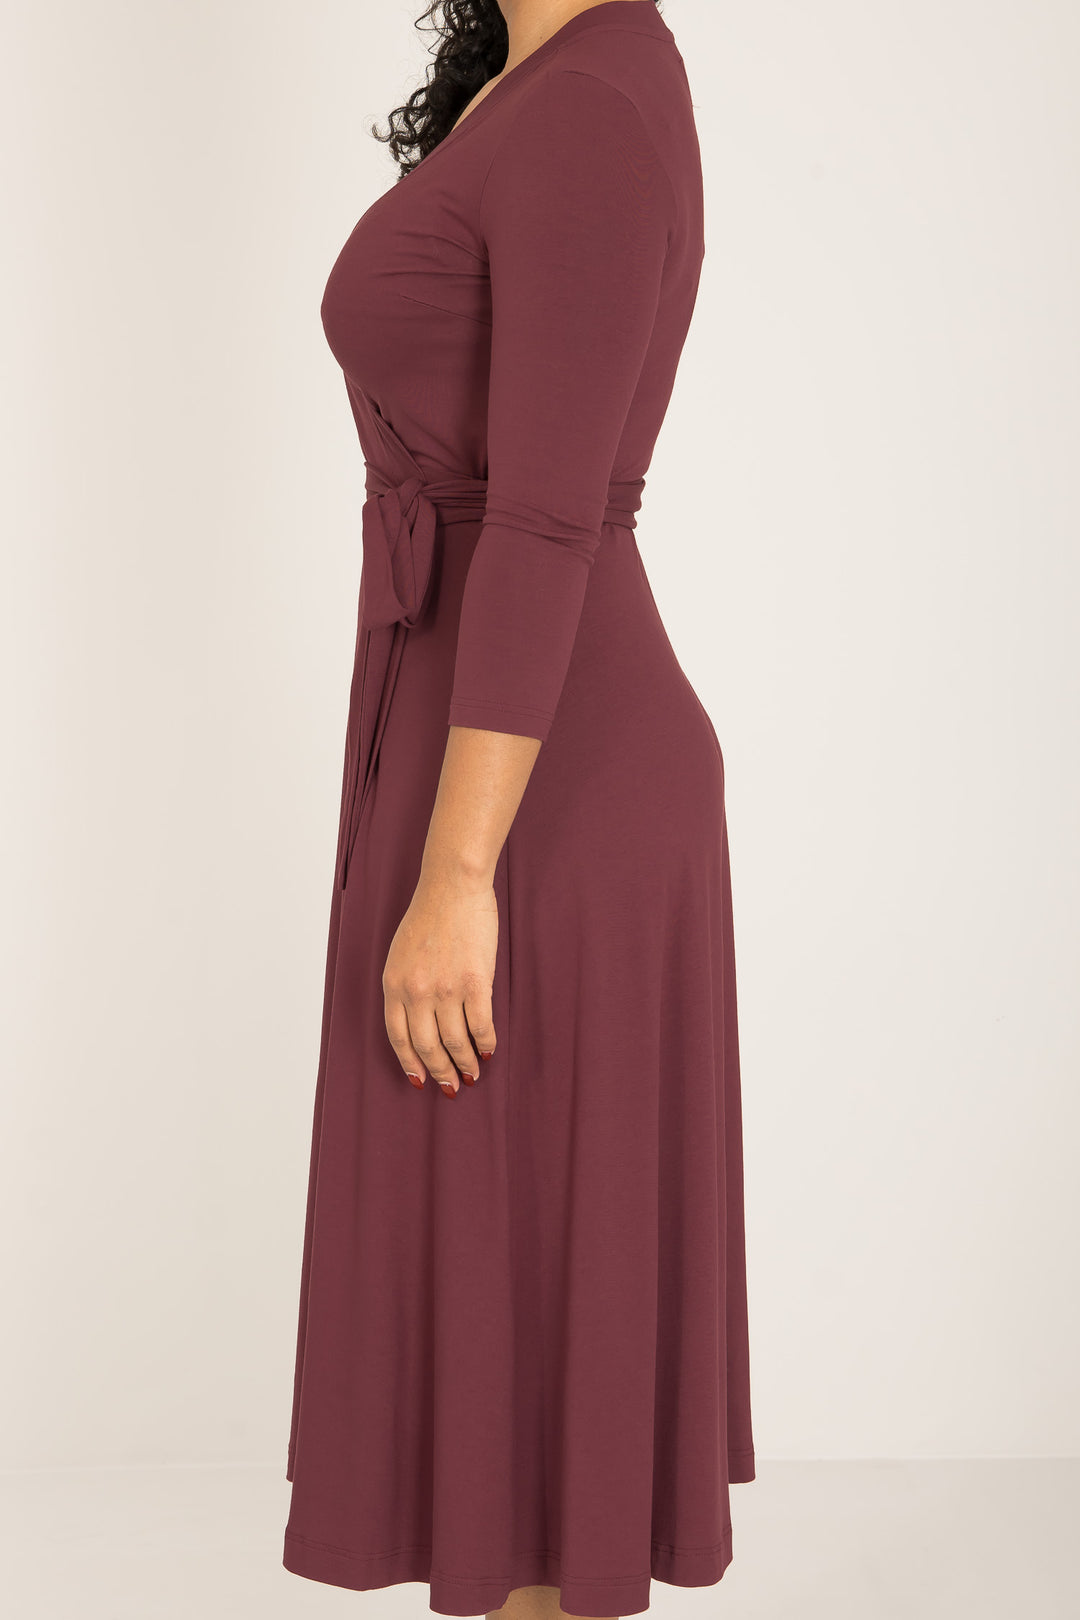 Bestie midi lenght wrap jersey dress - Burgundy - Vadlång, brunröd omlottklänning i trikå